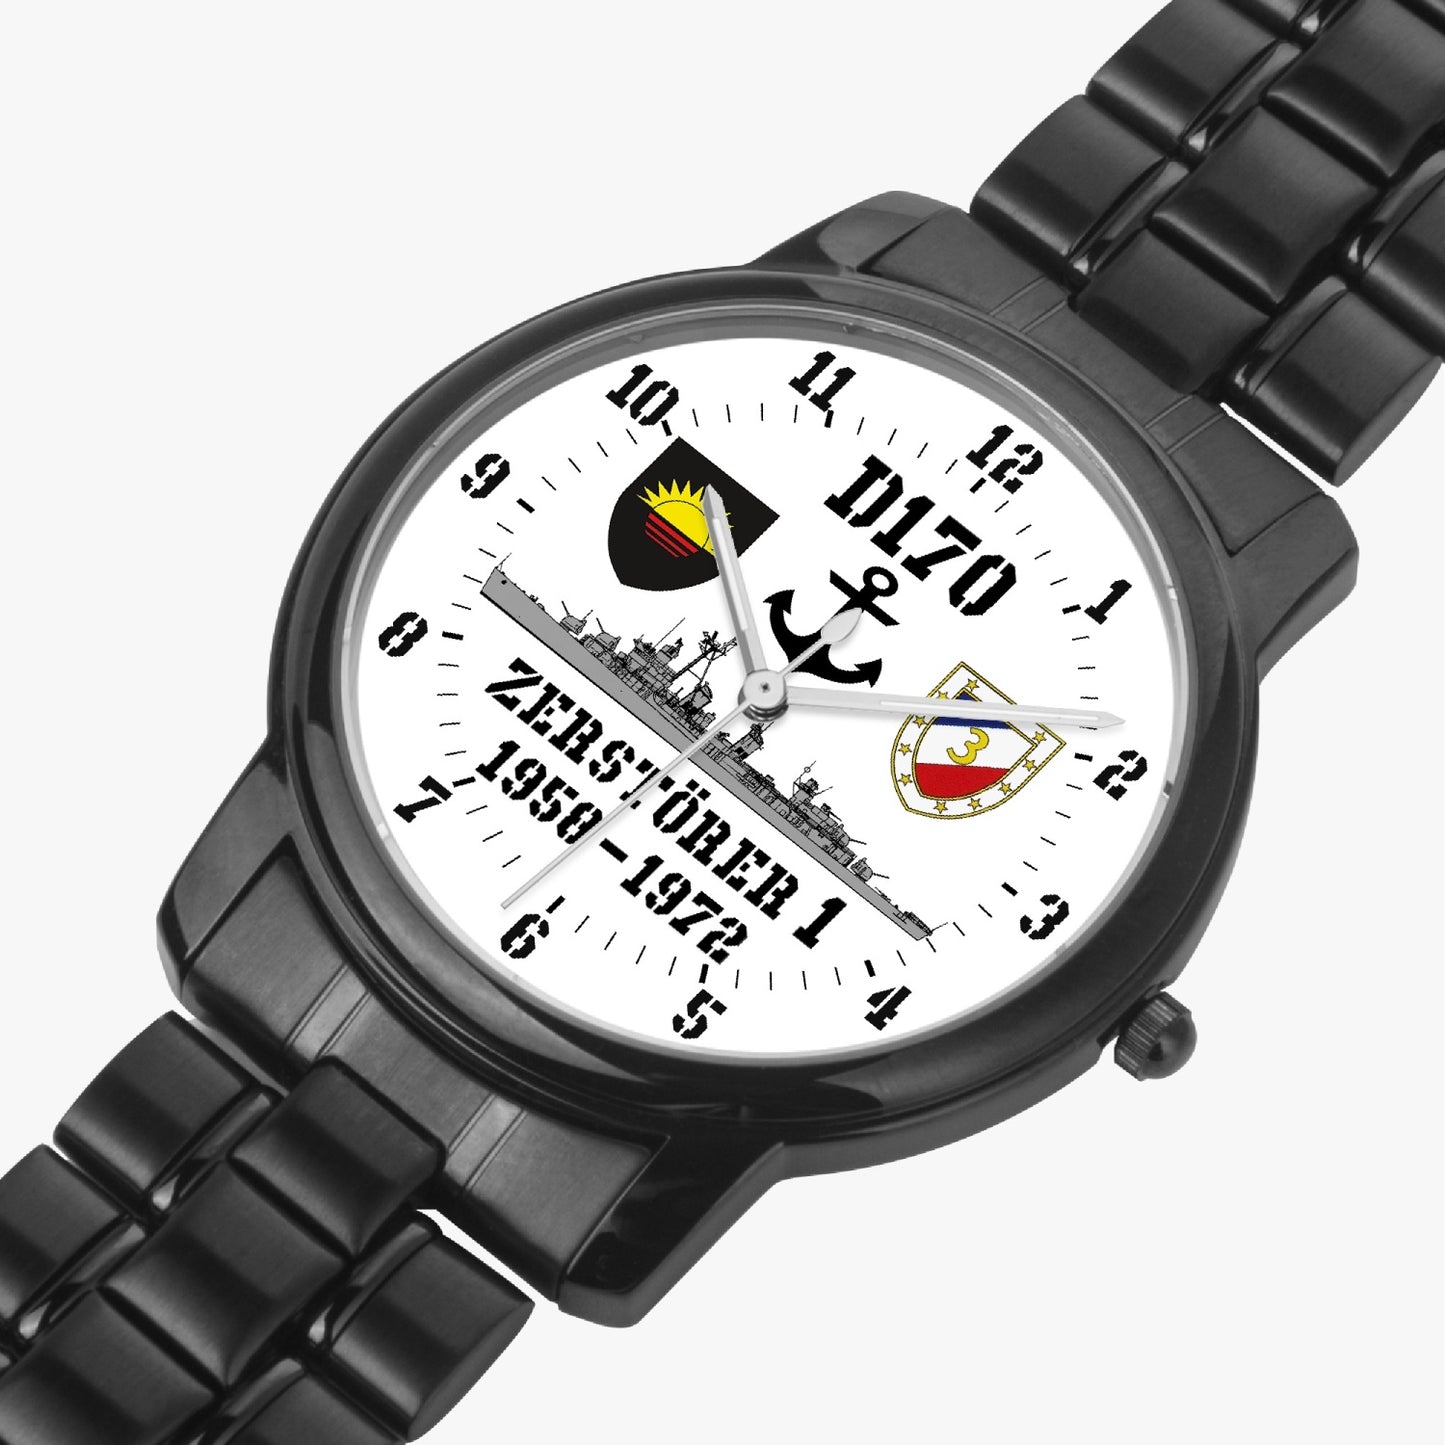 Armbanduhr D170 ZERSTÖRER 1 - Batterie